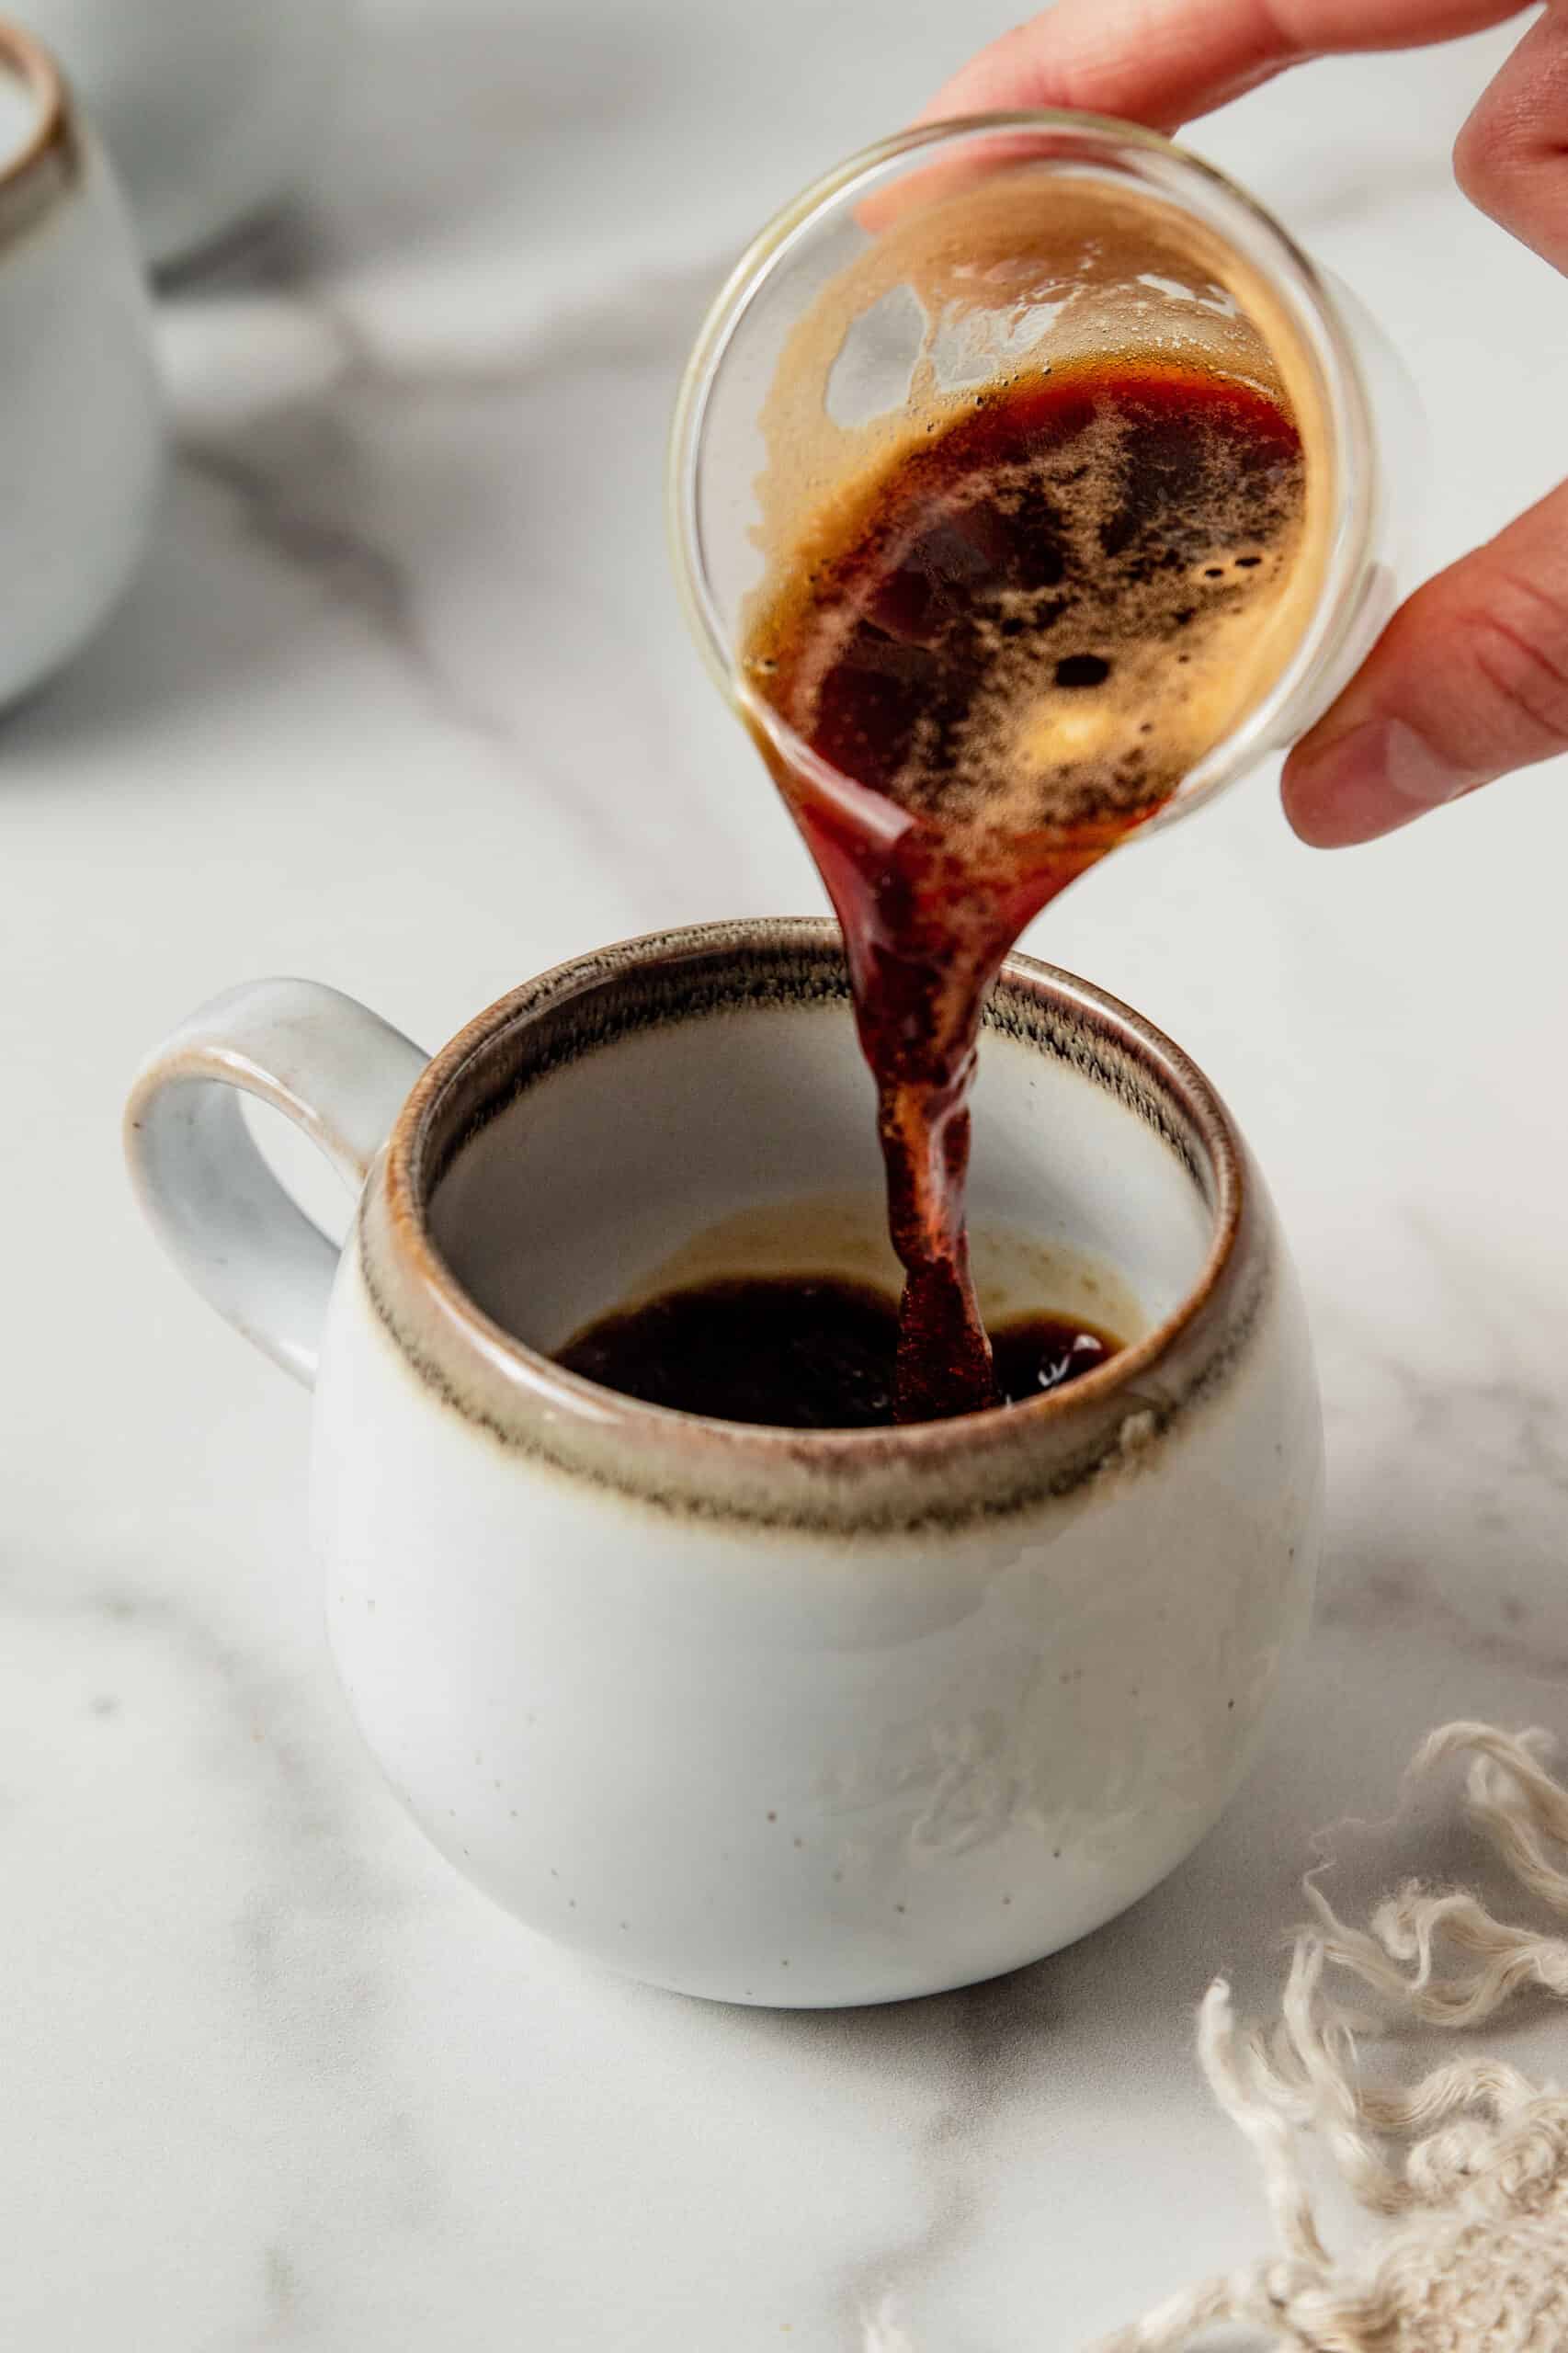 Pouring espresso into a latte mug.